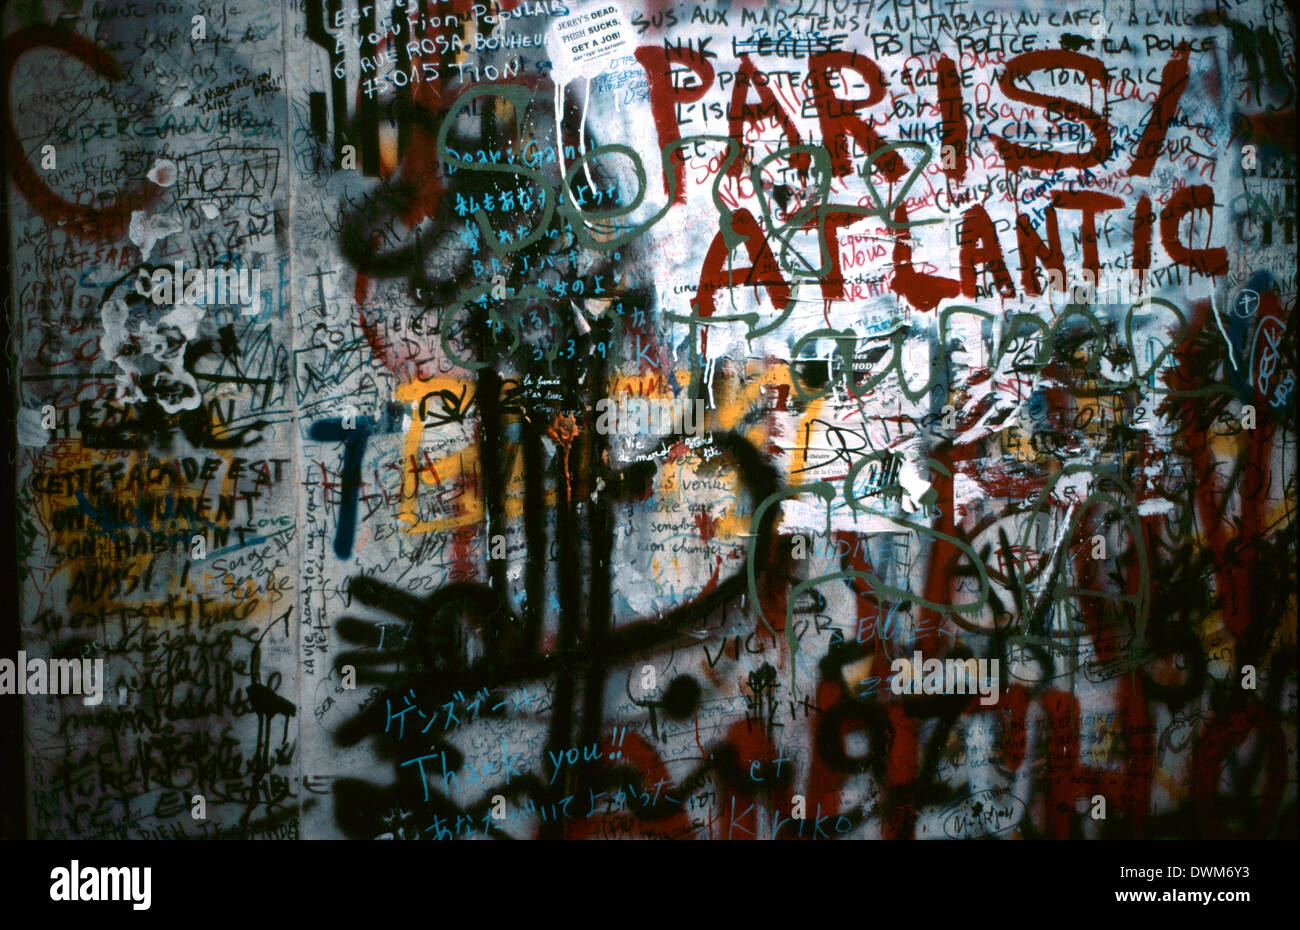 AJAXNETPHOTO.12TH APRIL 1998. PARIS, FRANKREICH. Graffittismeldungen an der Wand und Tür vor der Serge Gainsbourg Residenz. Foto: Jonathan Eastland Stockfoto